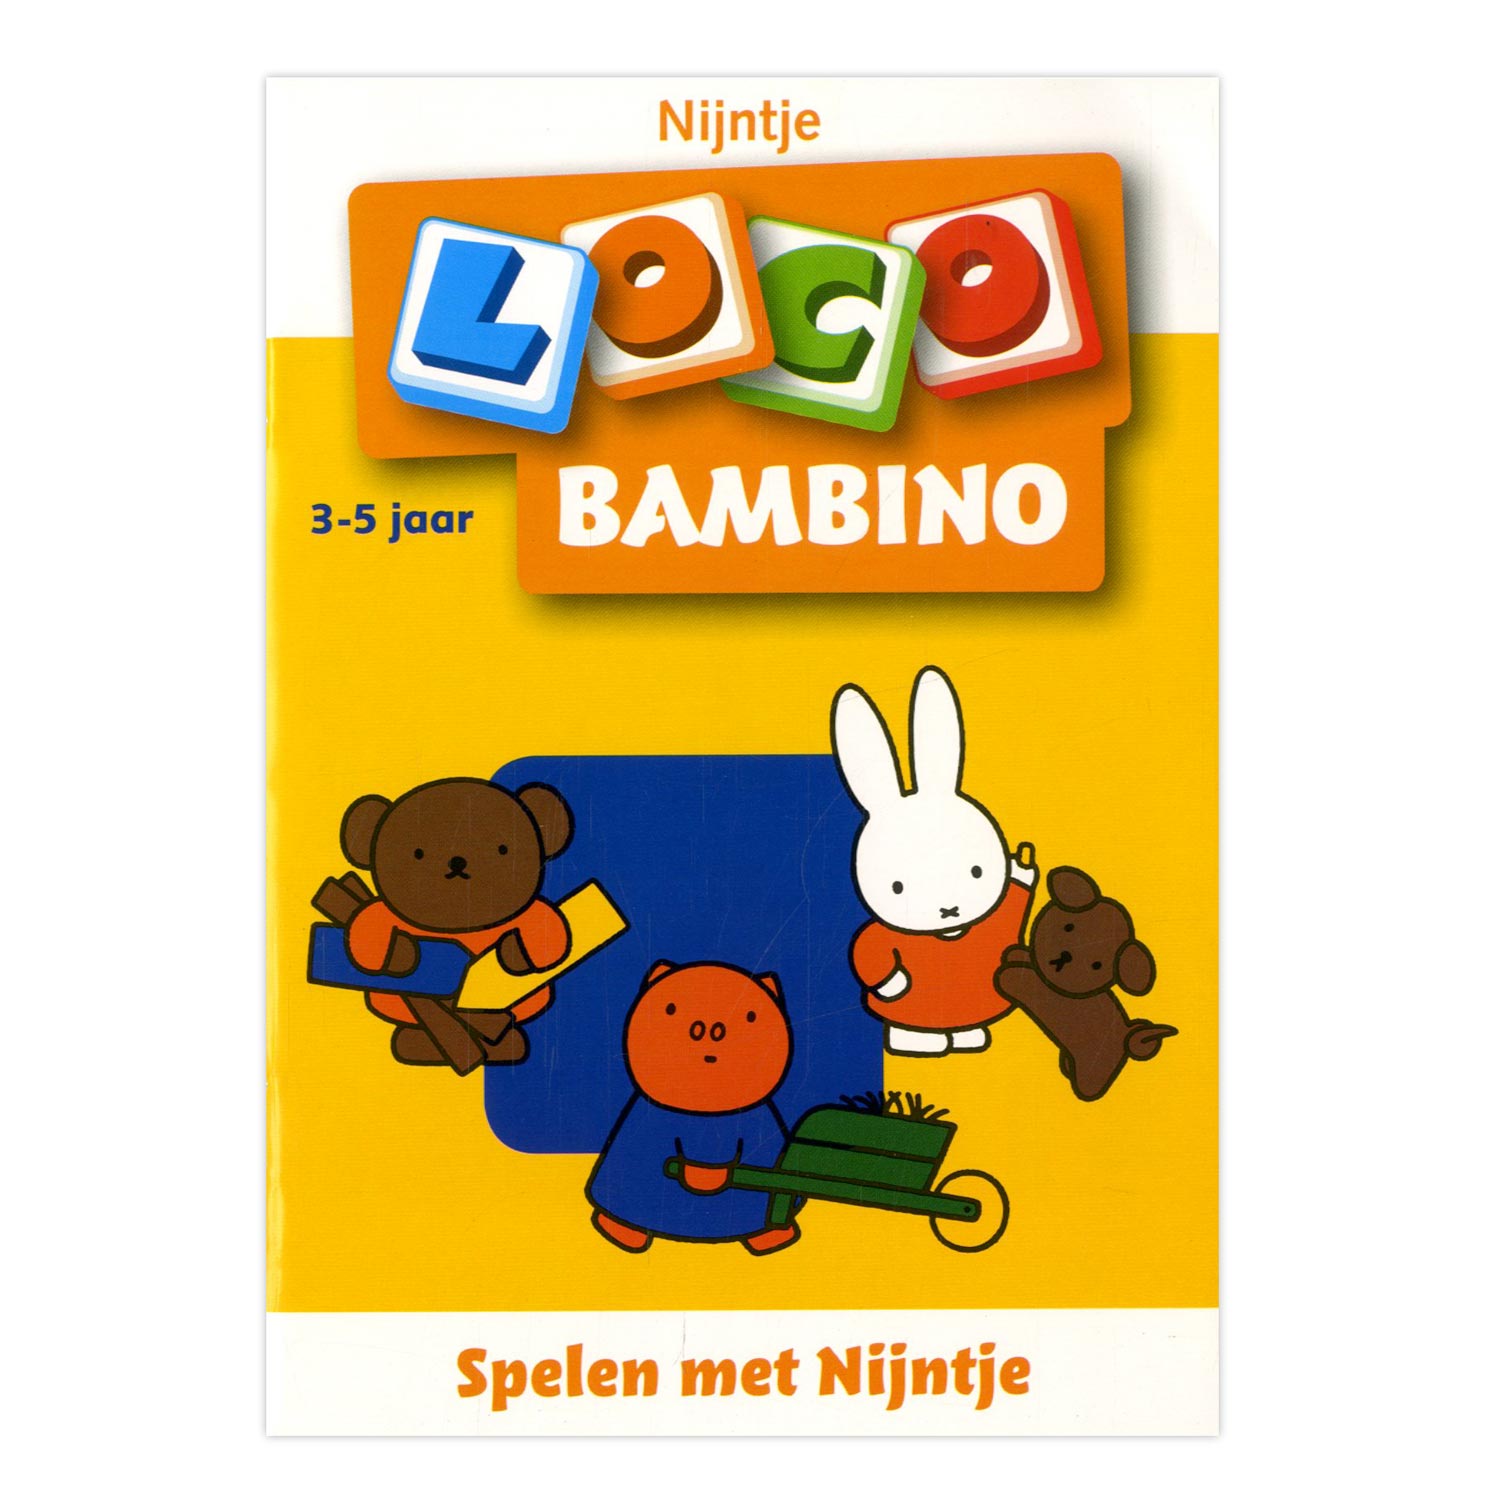 Bambino Loco - Spelen met Nijntje (3-5 jaar)